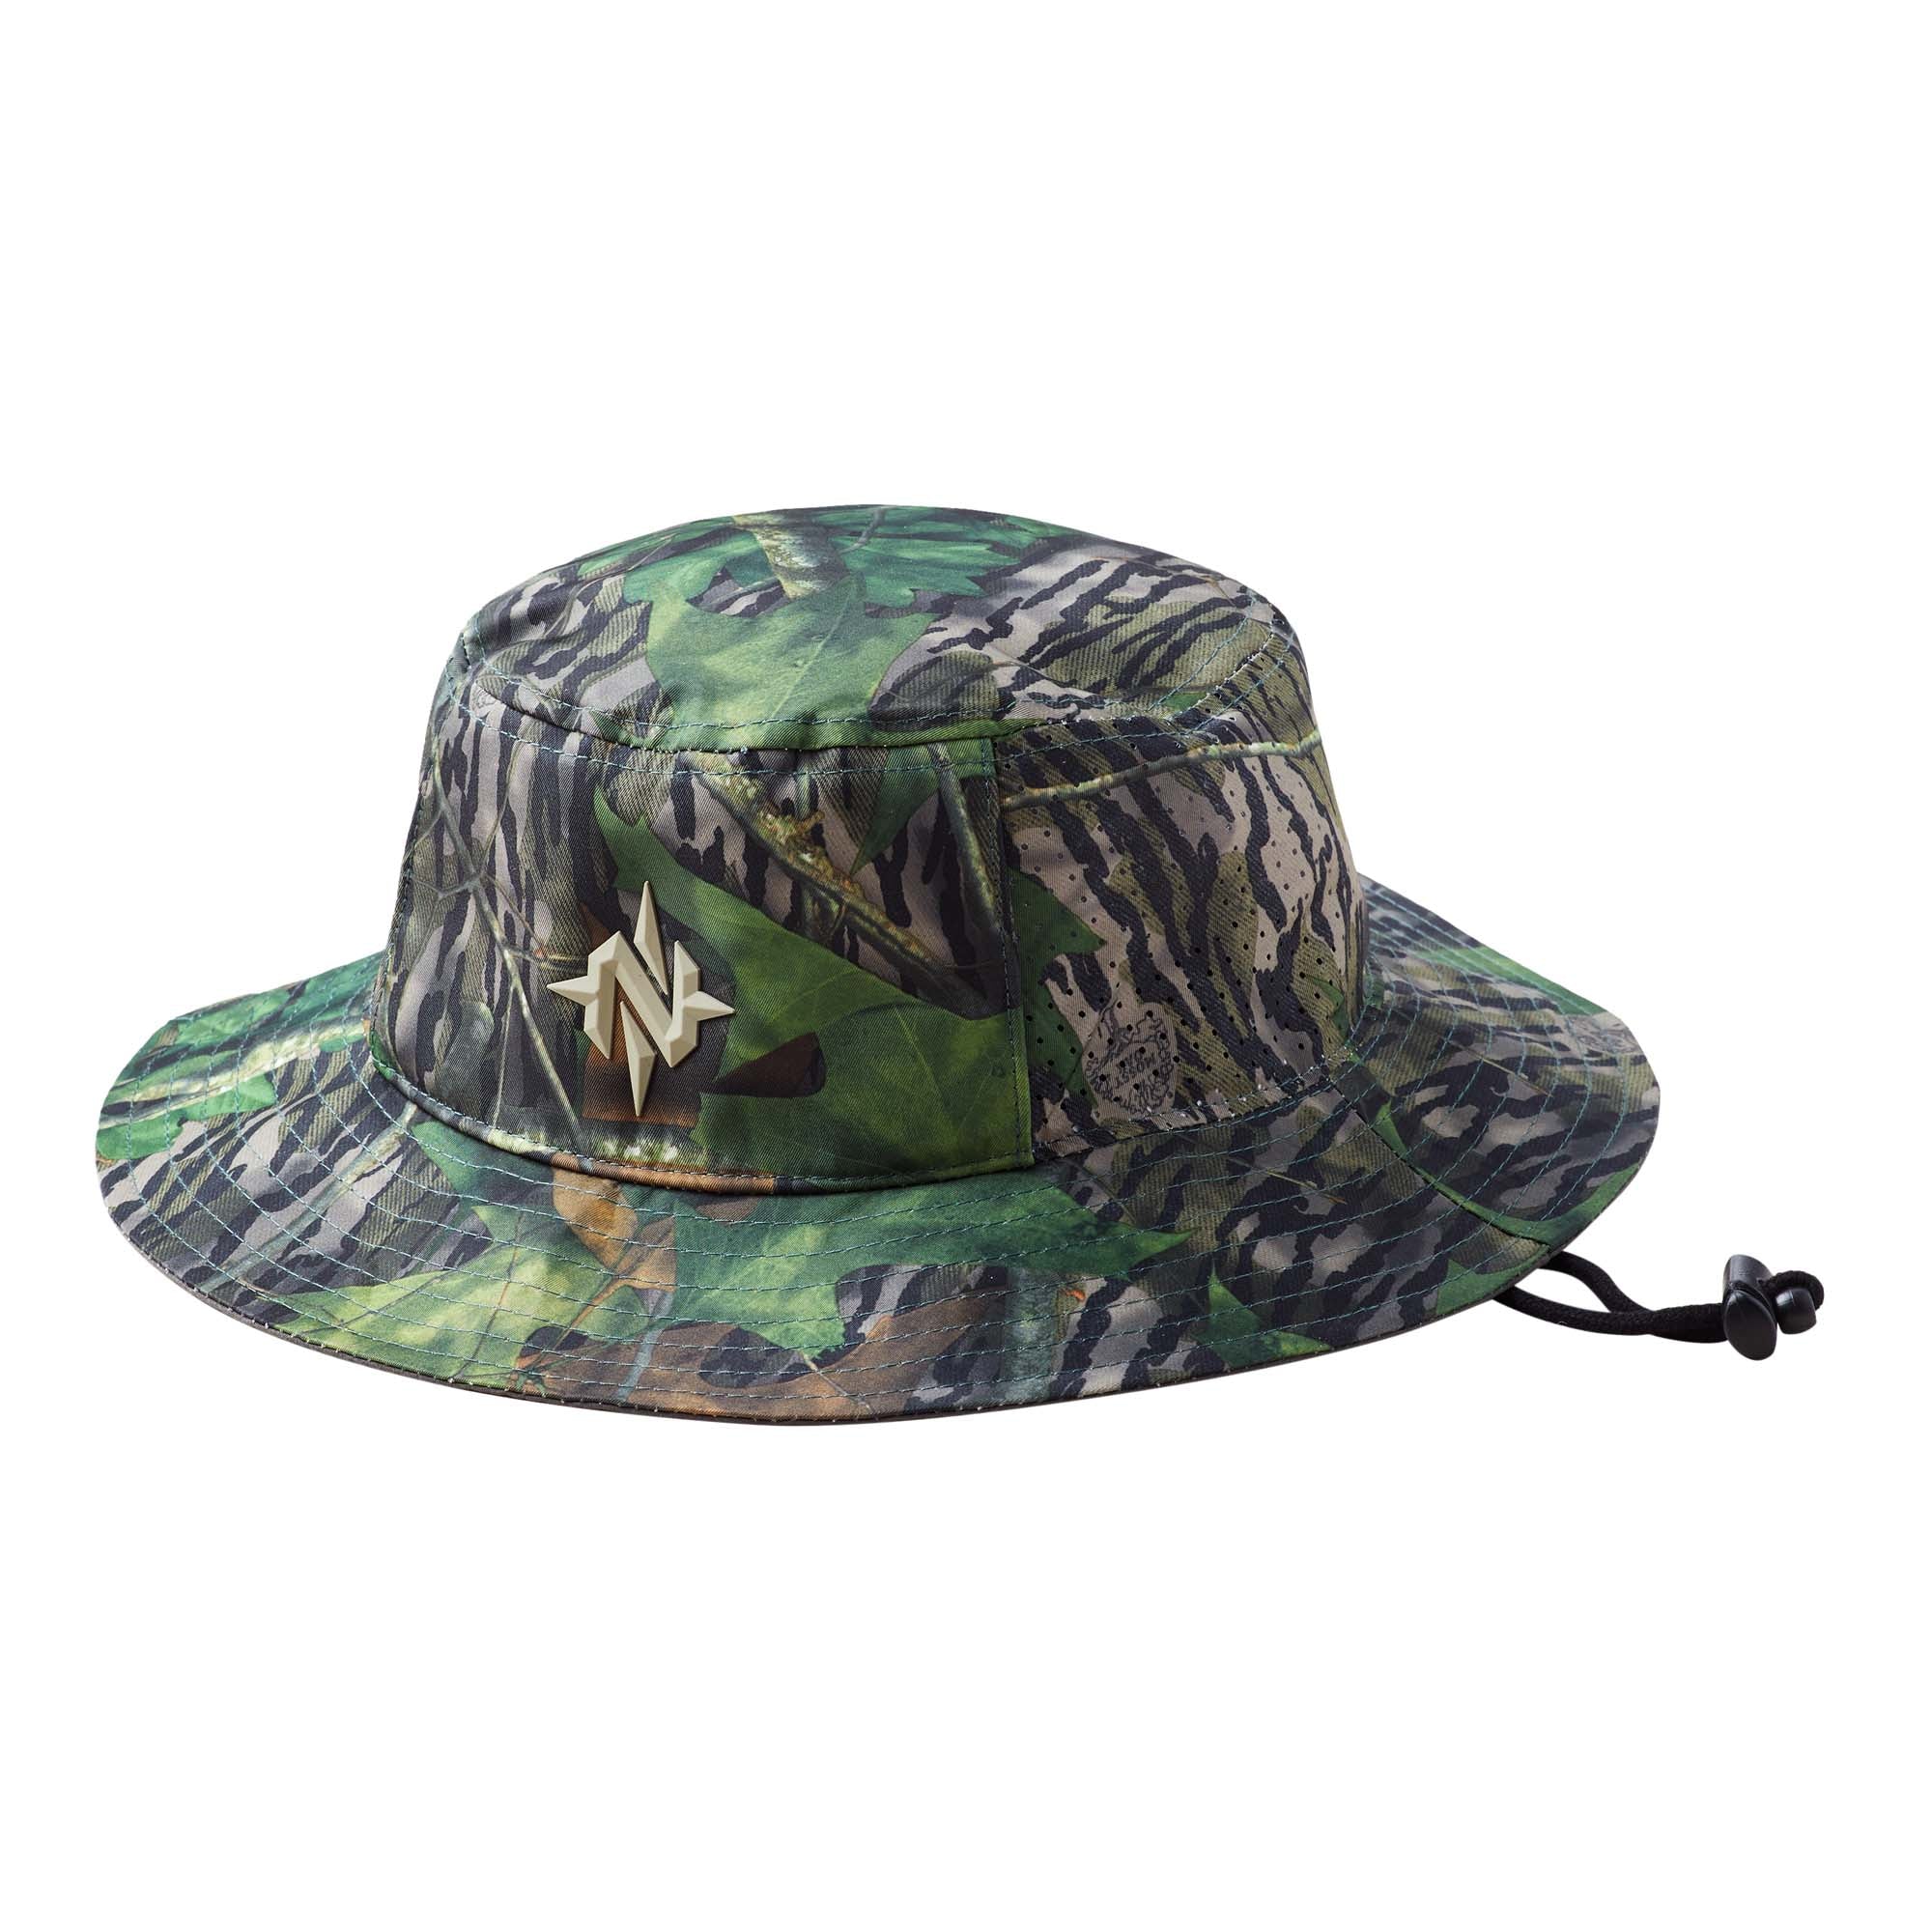  Mossy Oak Bucket Hat